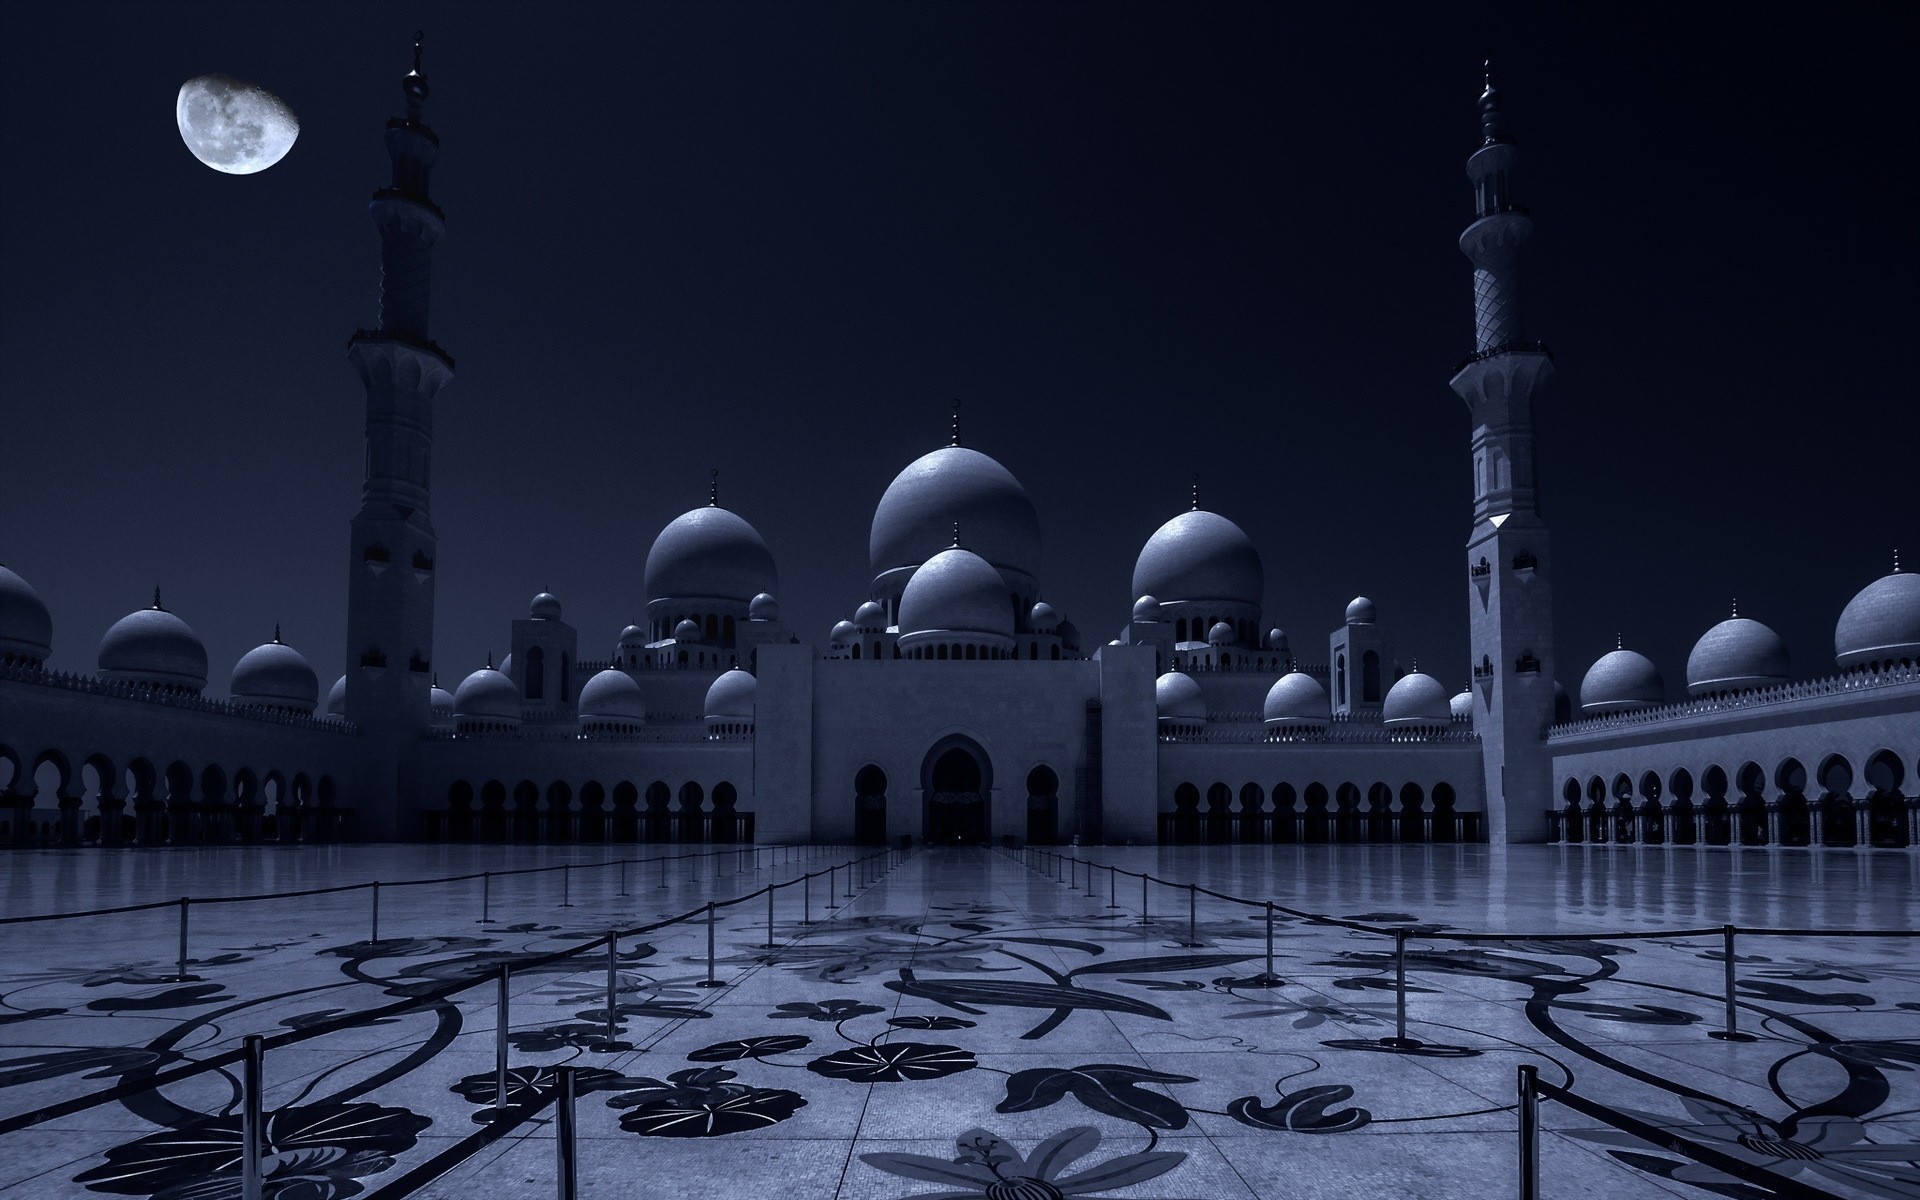 Х мусульманские. Мечеть шейха Зайда Абу-Даби. Мечеть шейха Зайда в Абу-Даби ночью. Мечеть Зайда в Абу Даби ночью. Мечеть шейха Зайда в Абу-Даби ночью с луной.